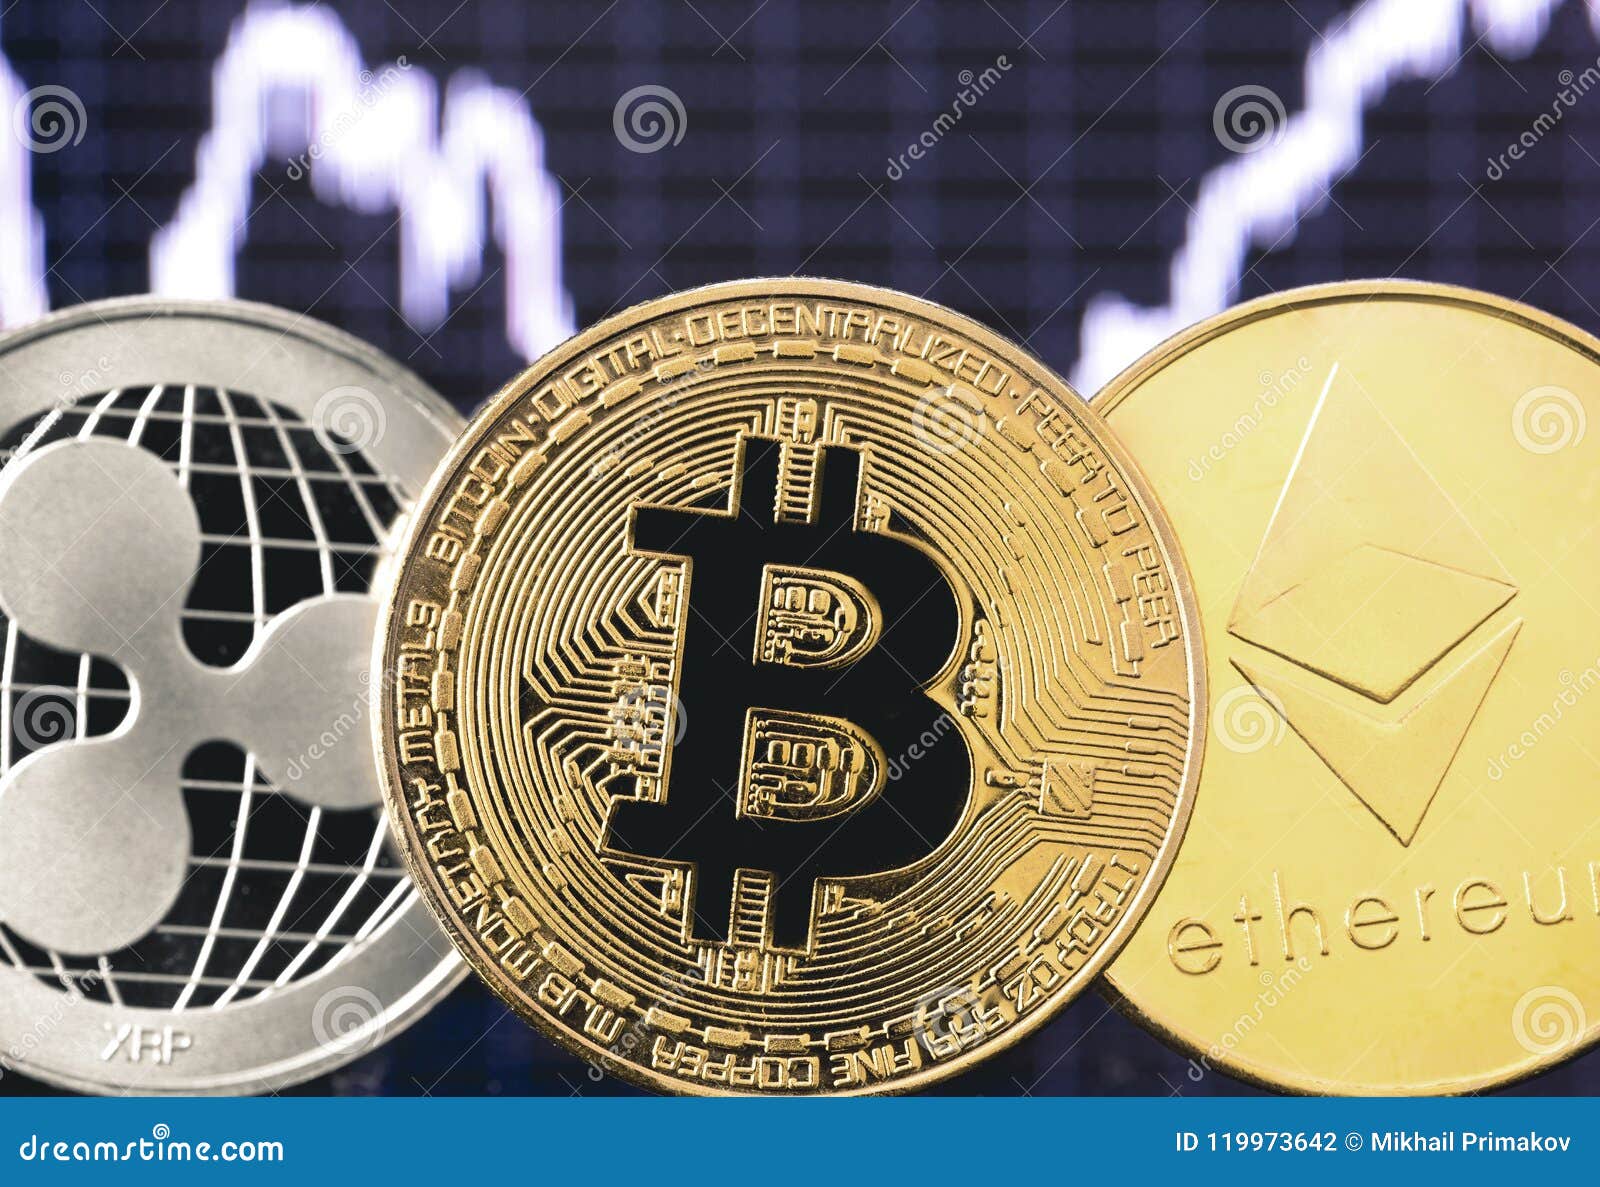 ripple vs ethereum vs bitcoin